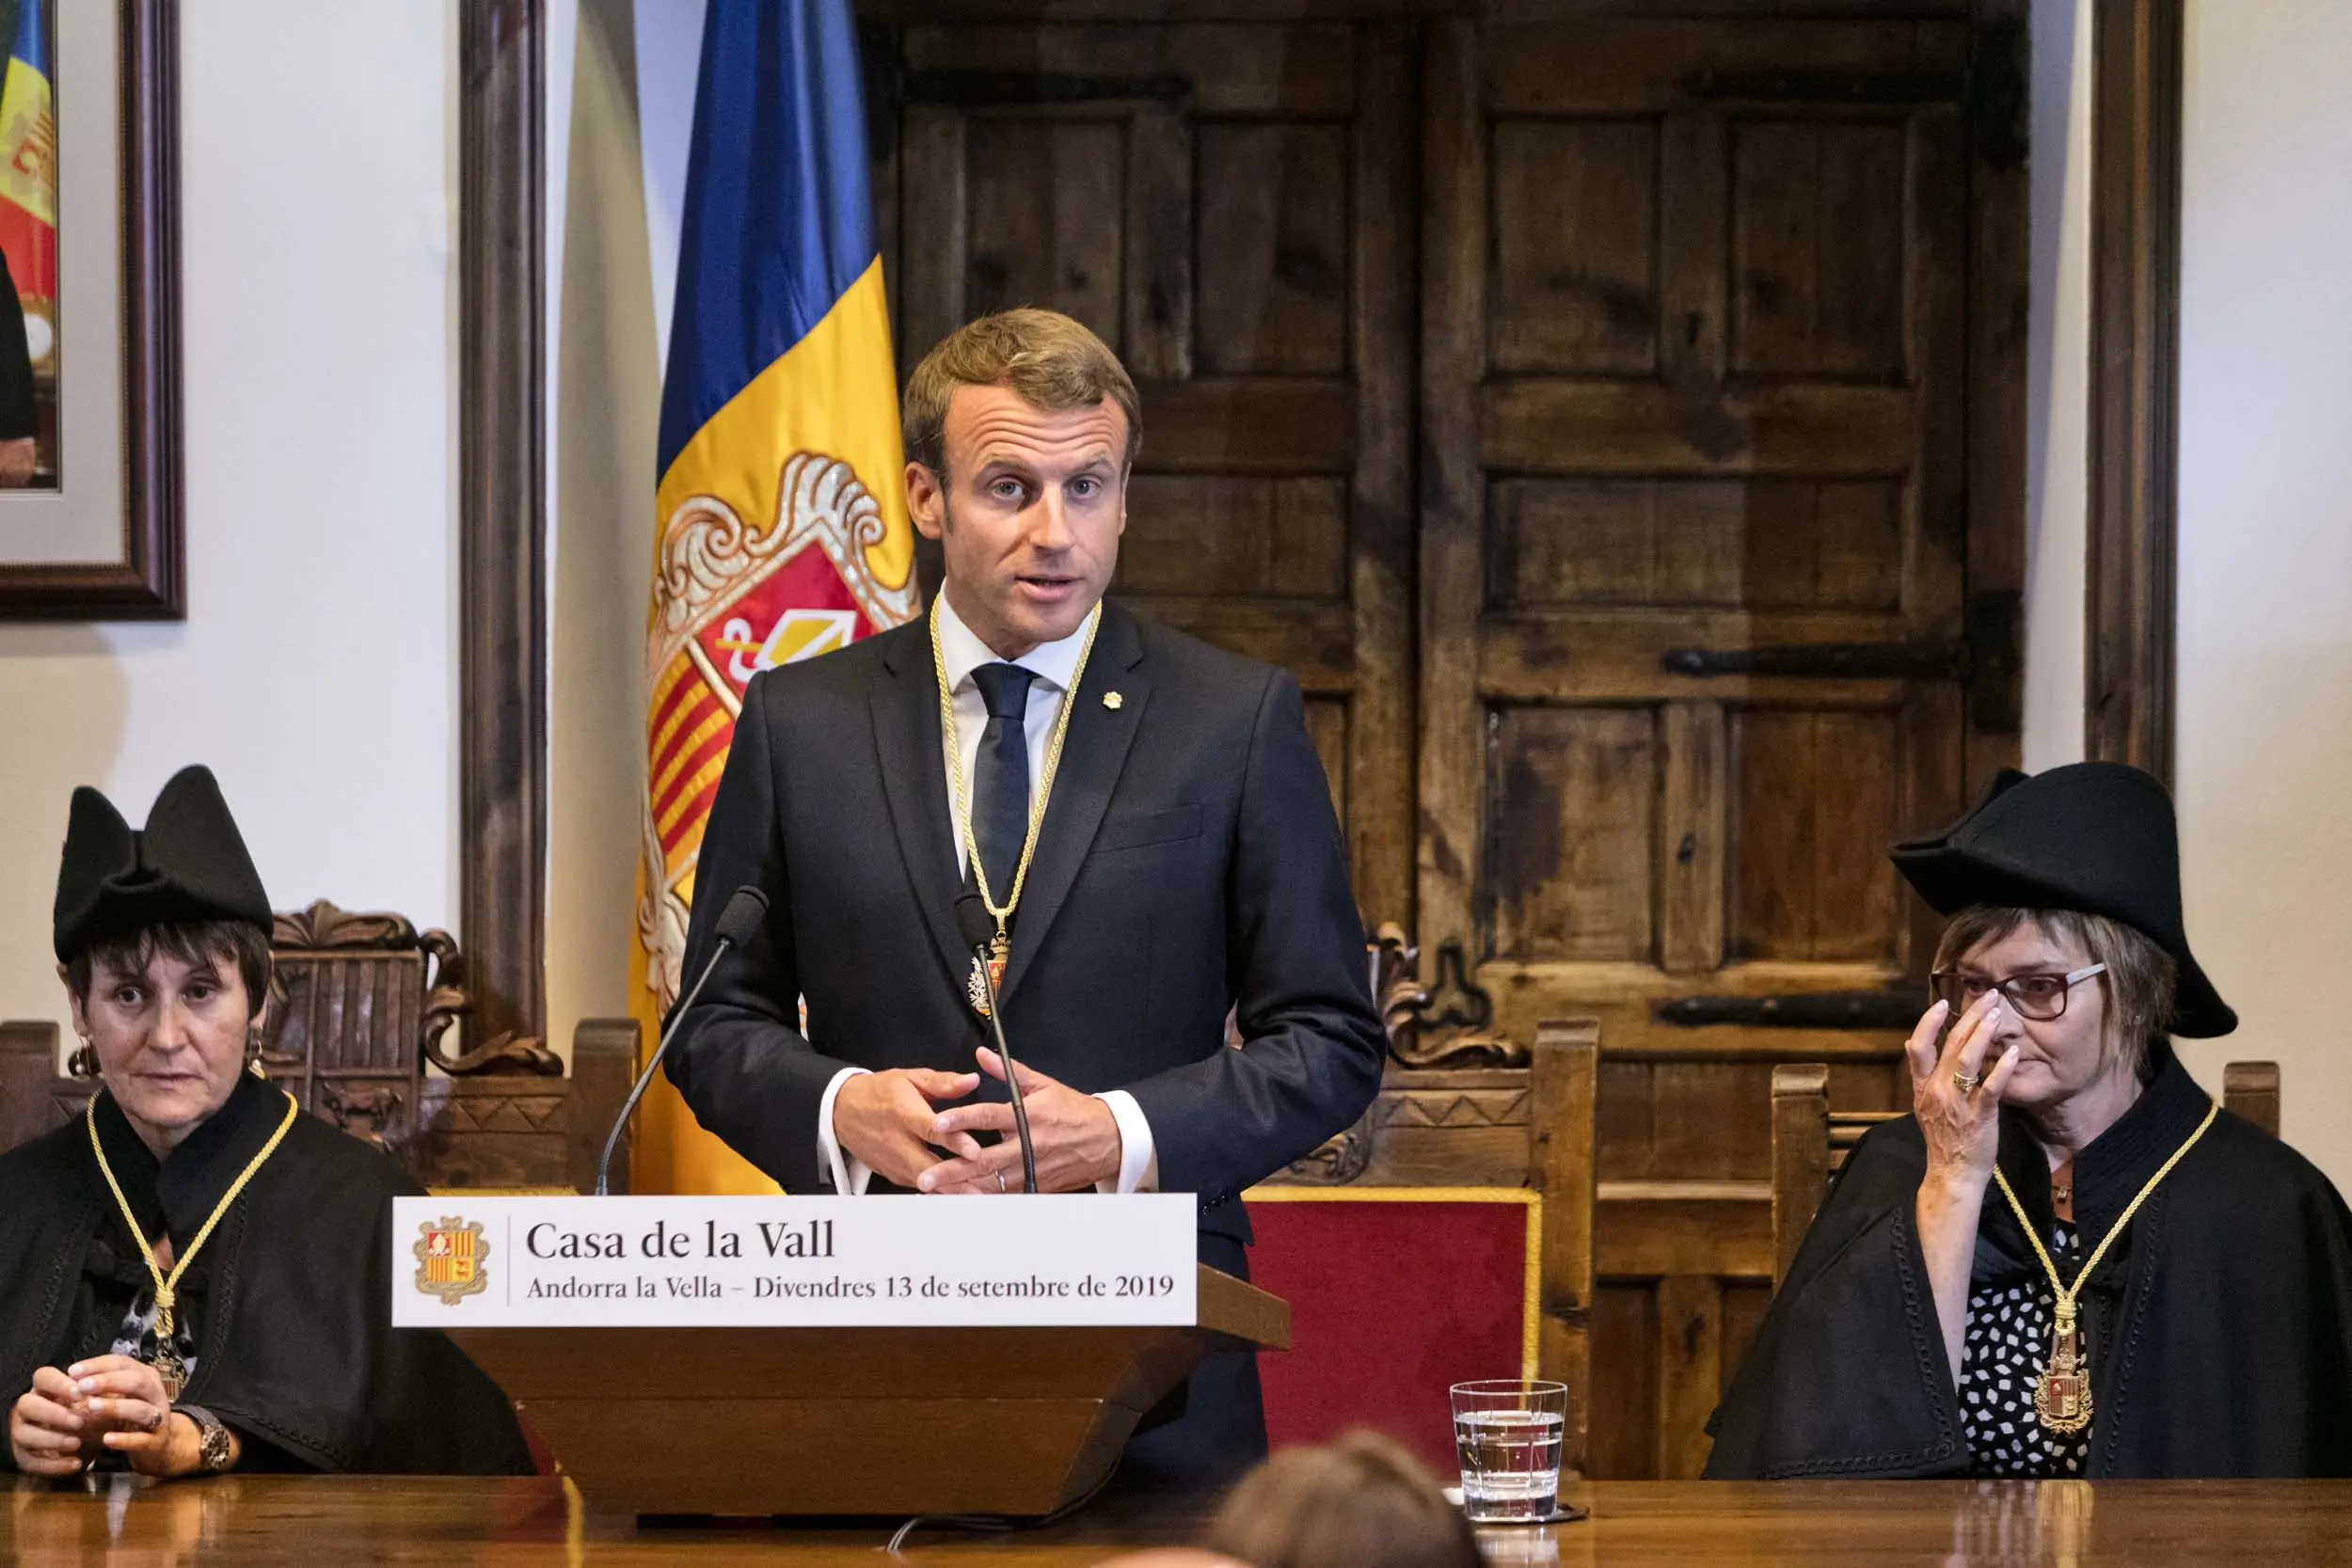 Muny bilýärdiňizmi?: Andorrany Fransiýanyň prezidenti dolandyrýar